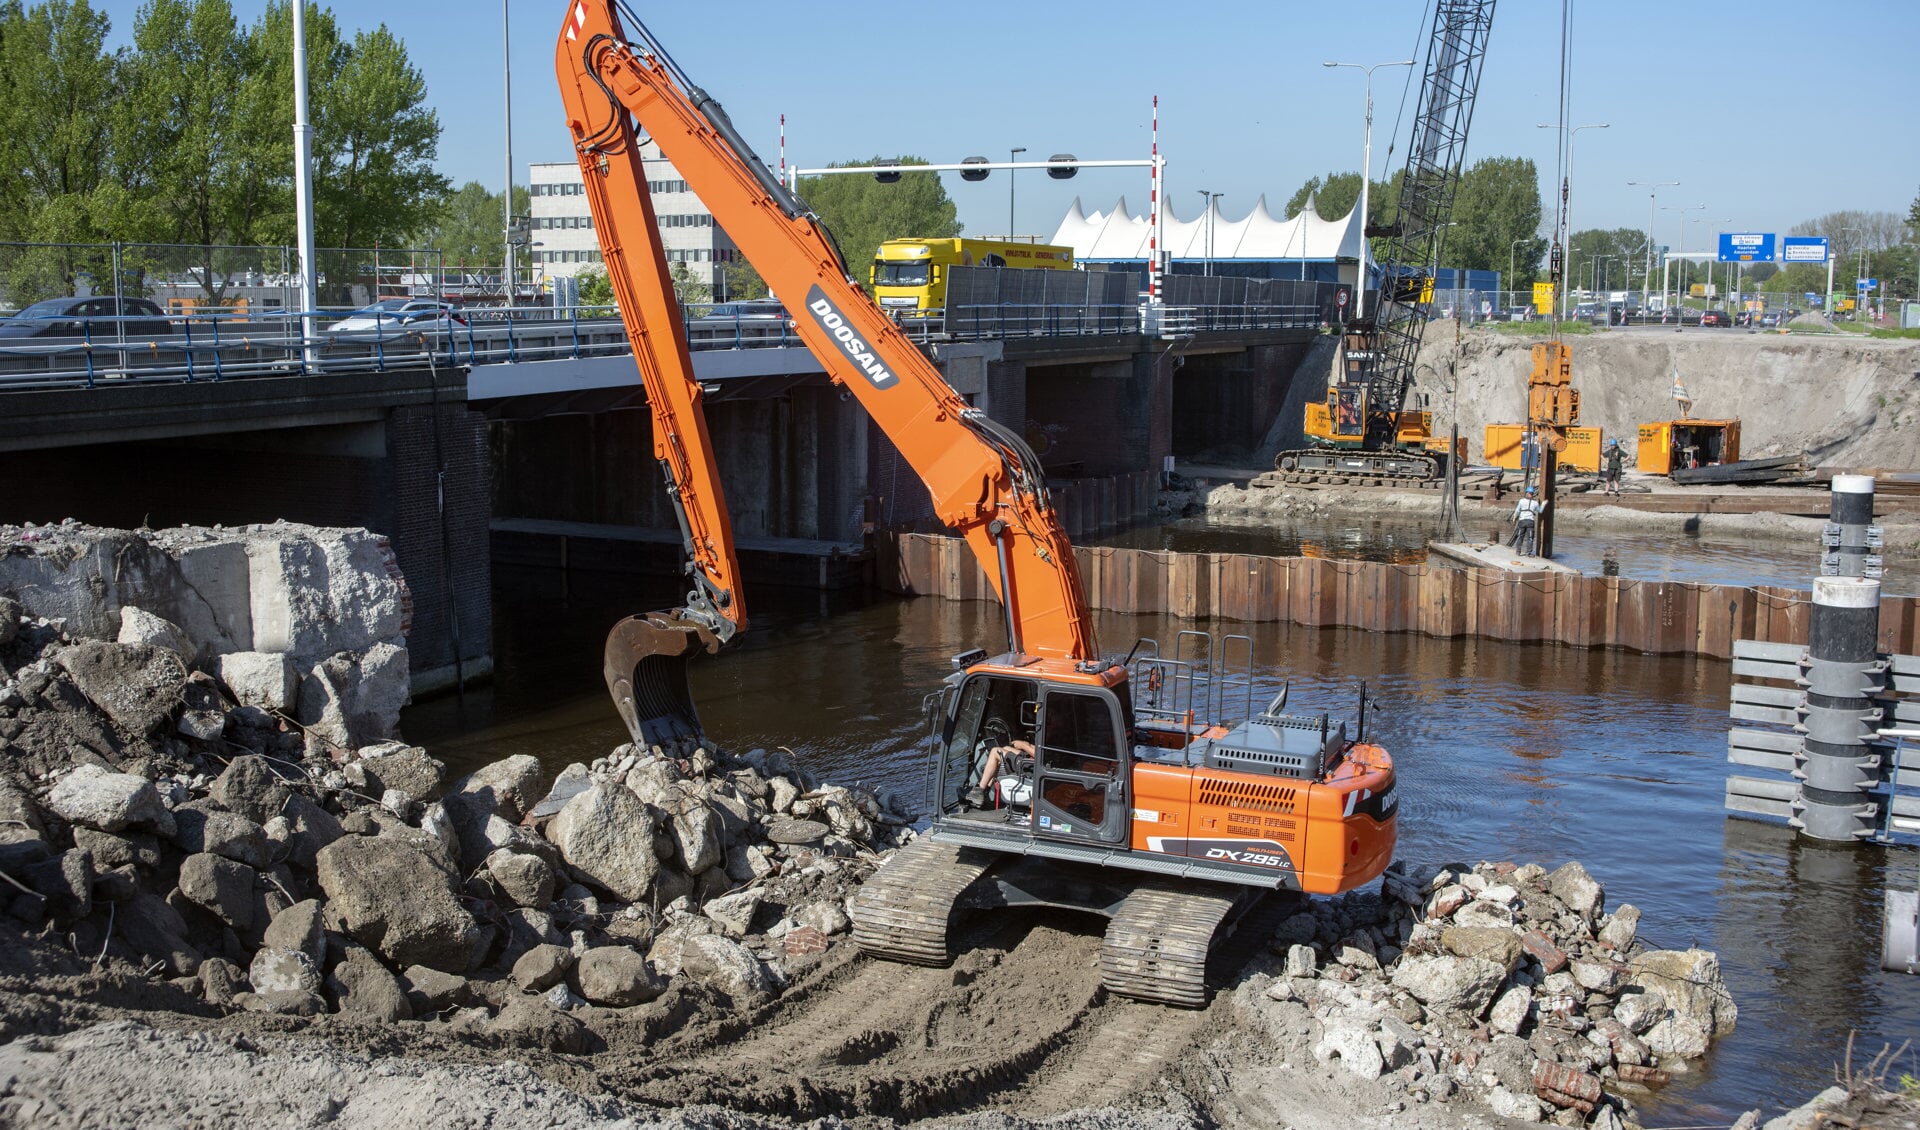 Provincie Noord-Holland treft maatregelen om de bouwstop aan de Leeghwaterbrug op te heffen. (Foto: aangeleverd)